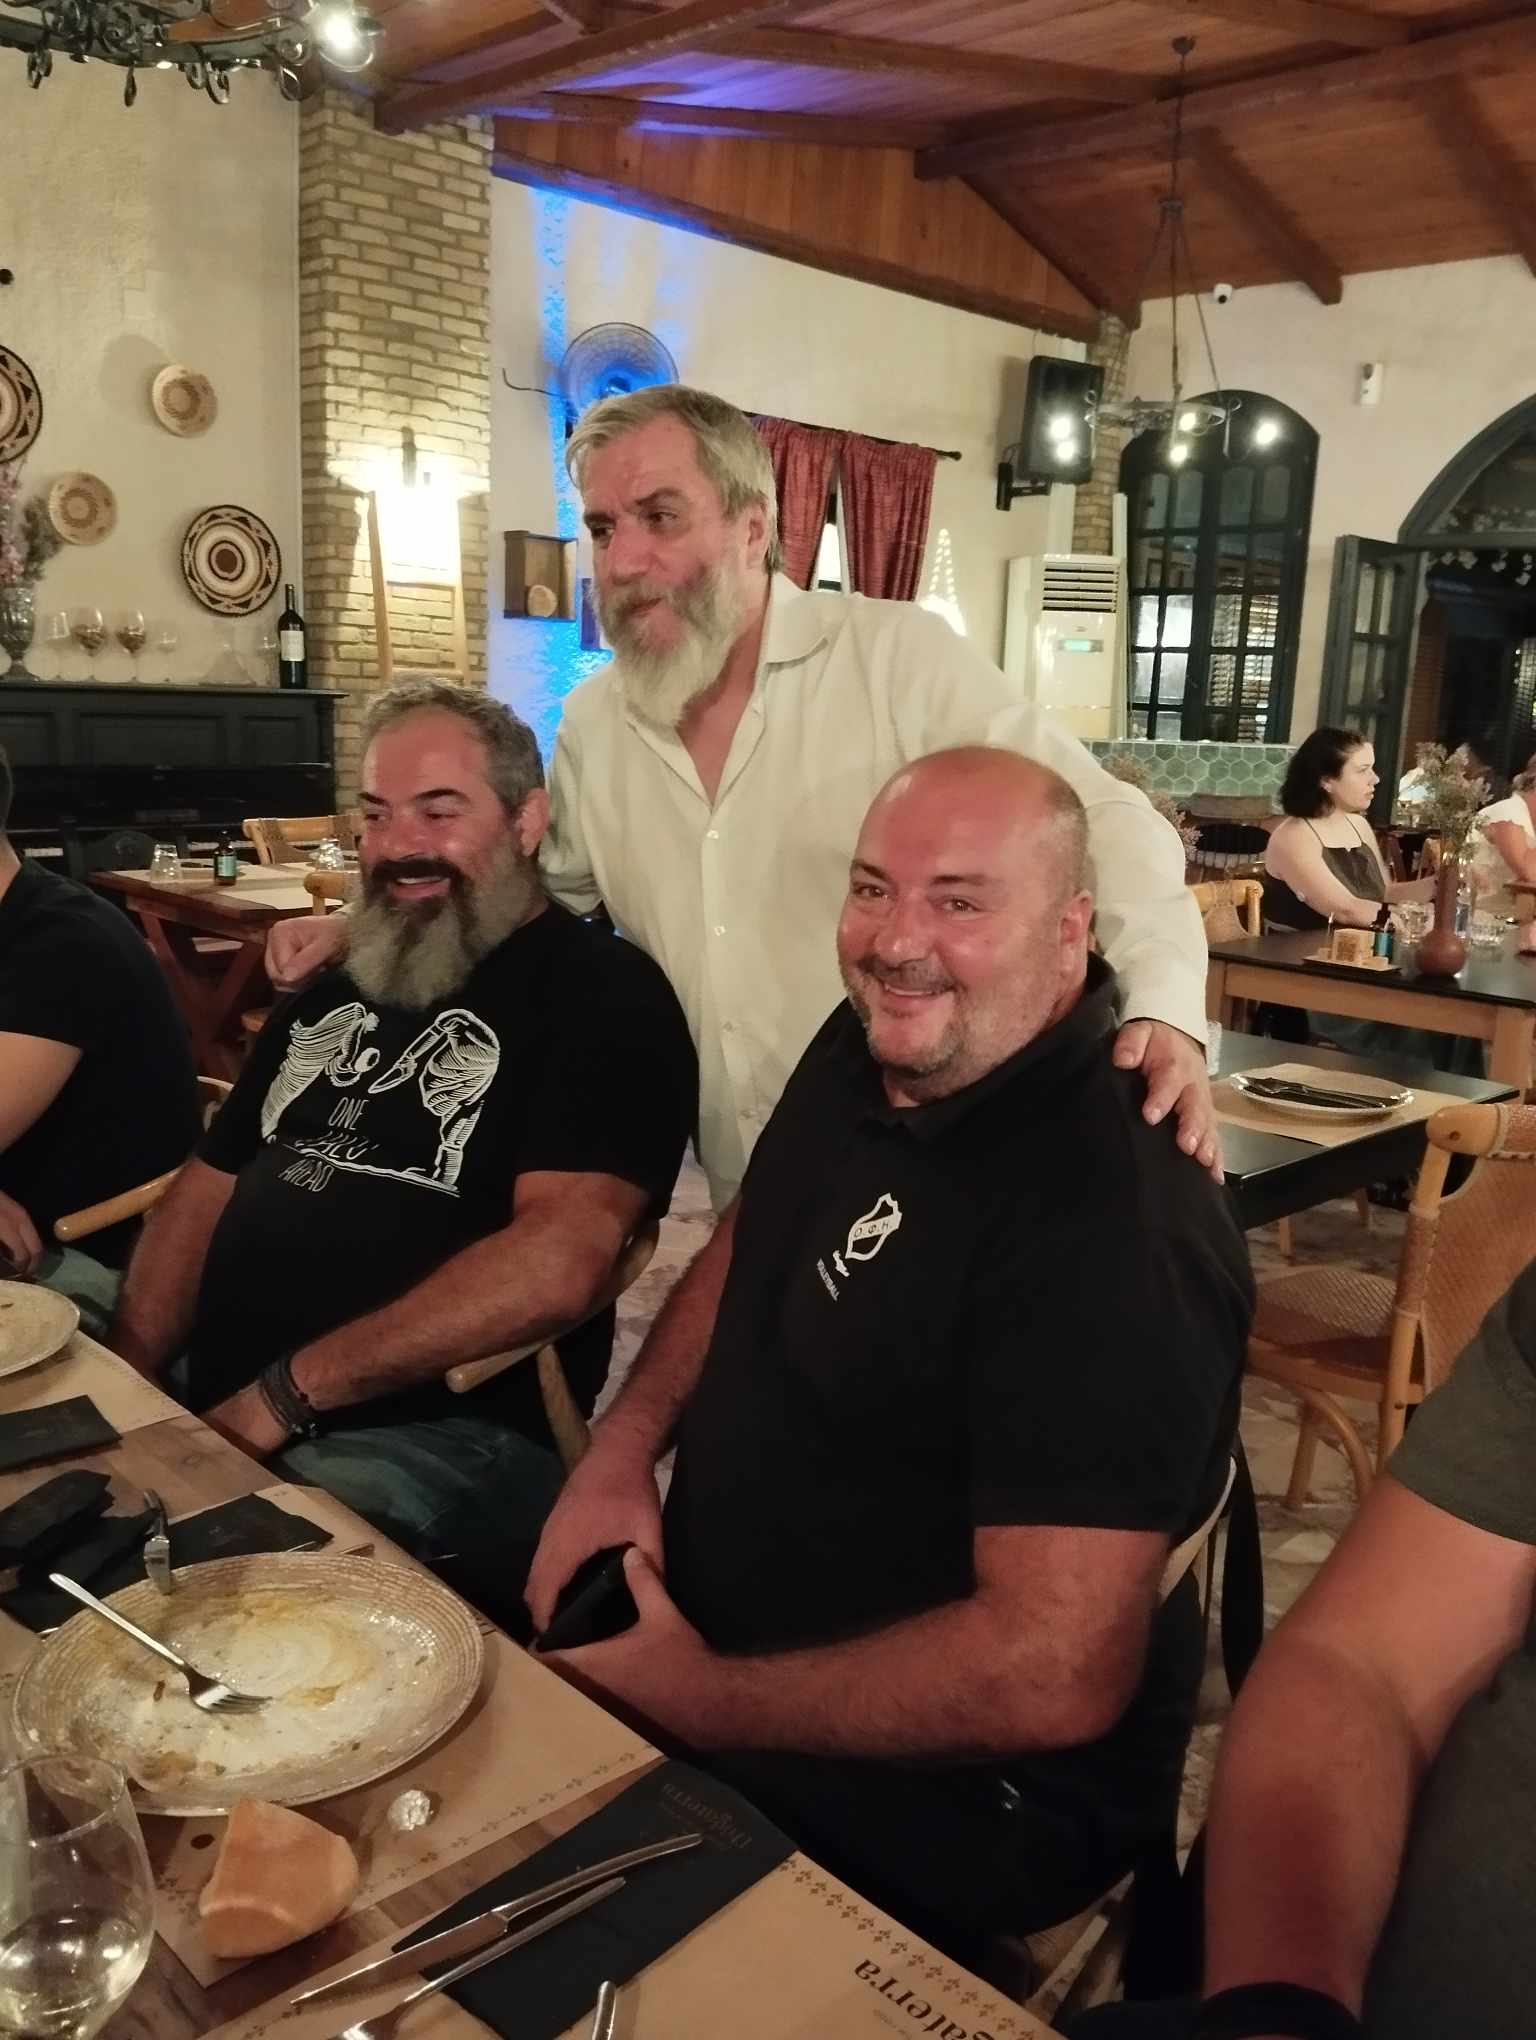 Με προεδρικό δείπνο ξεκίνησε το ταξίδι του ΟΦΗ για την επιστροφή του στην Volley League (ΦΩΤΟΓΡΑΦΙΕΣ)